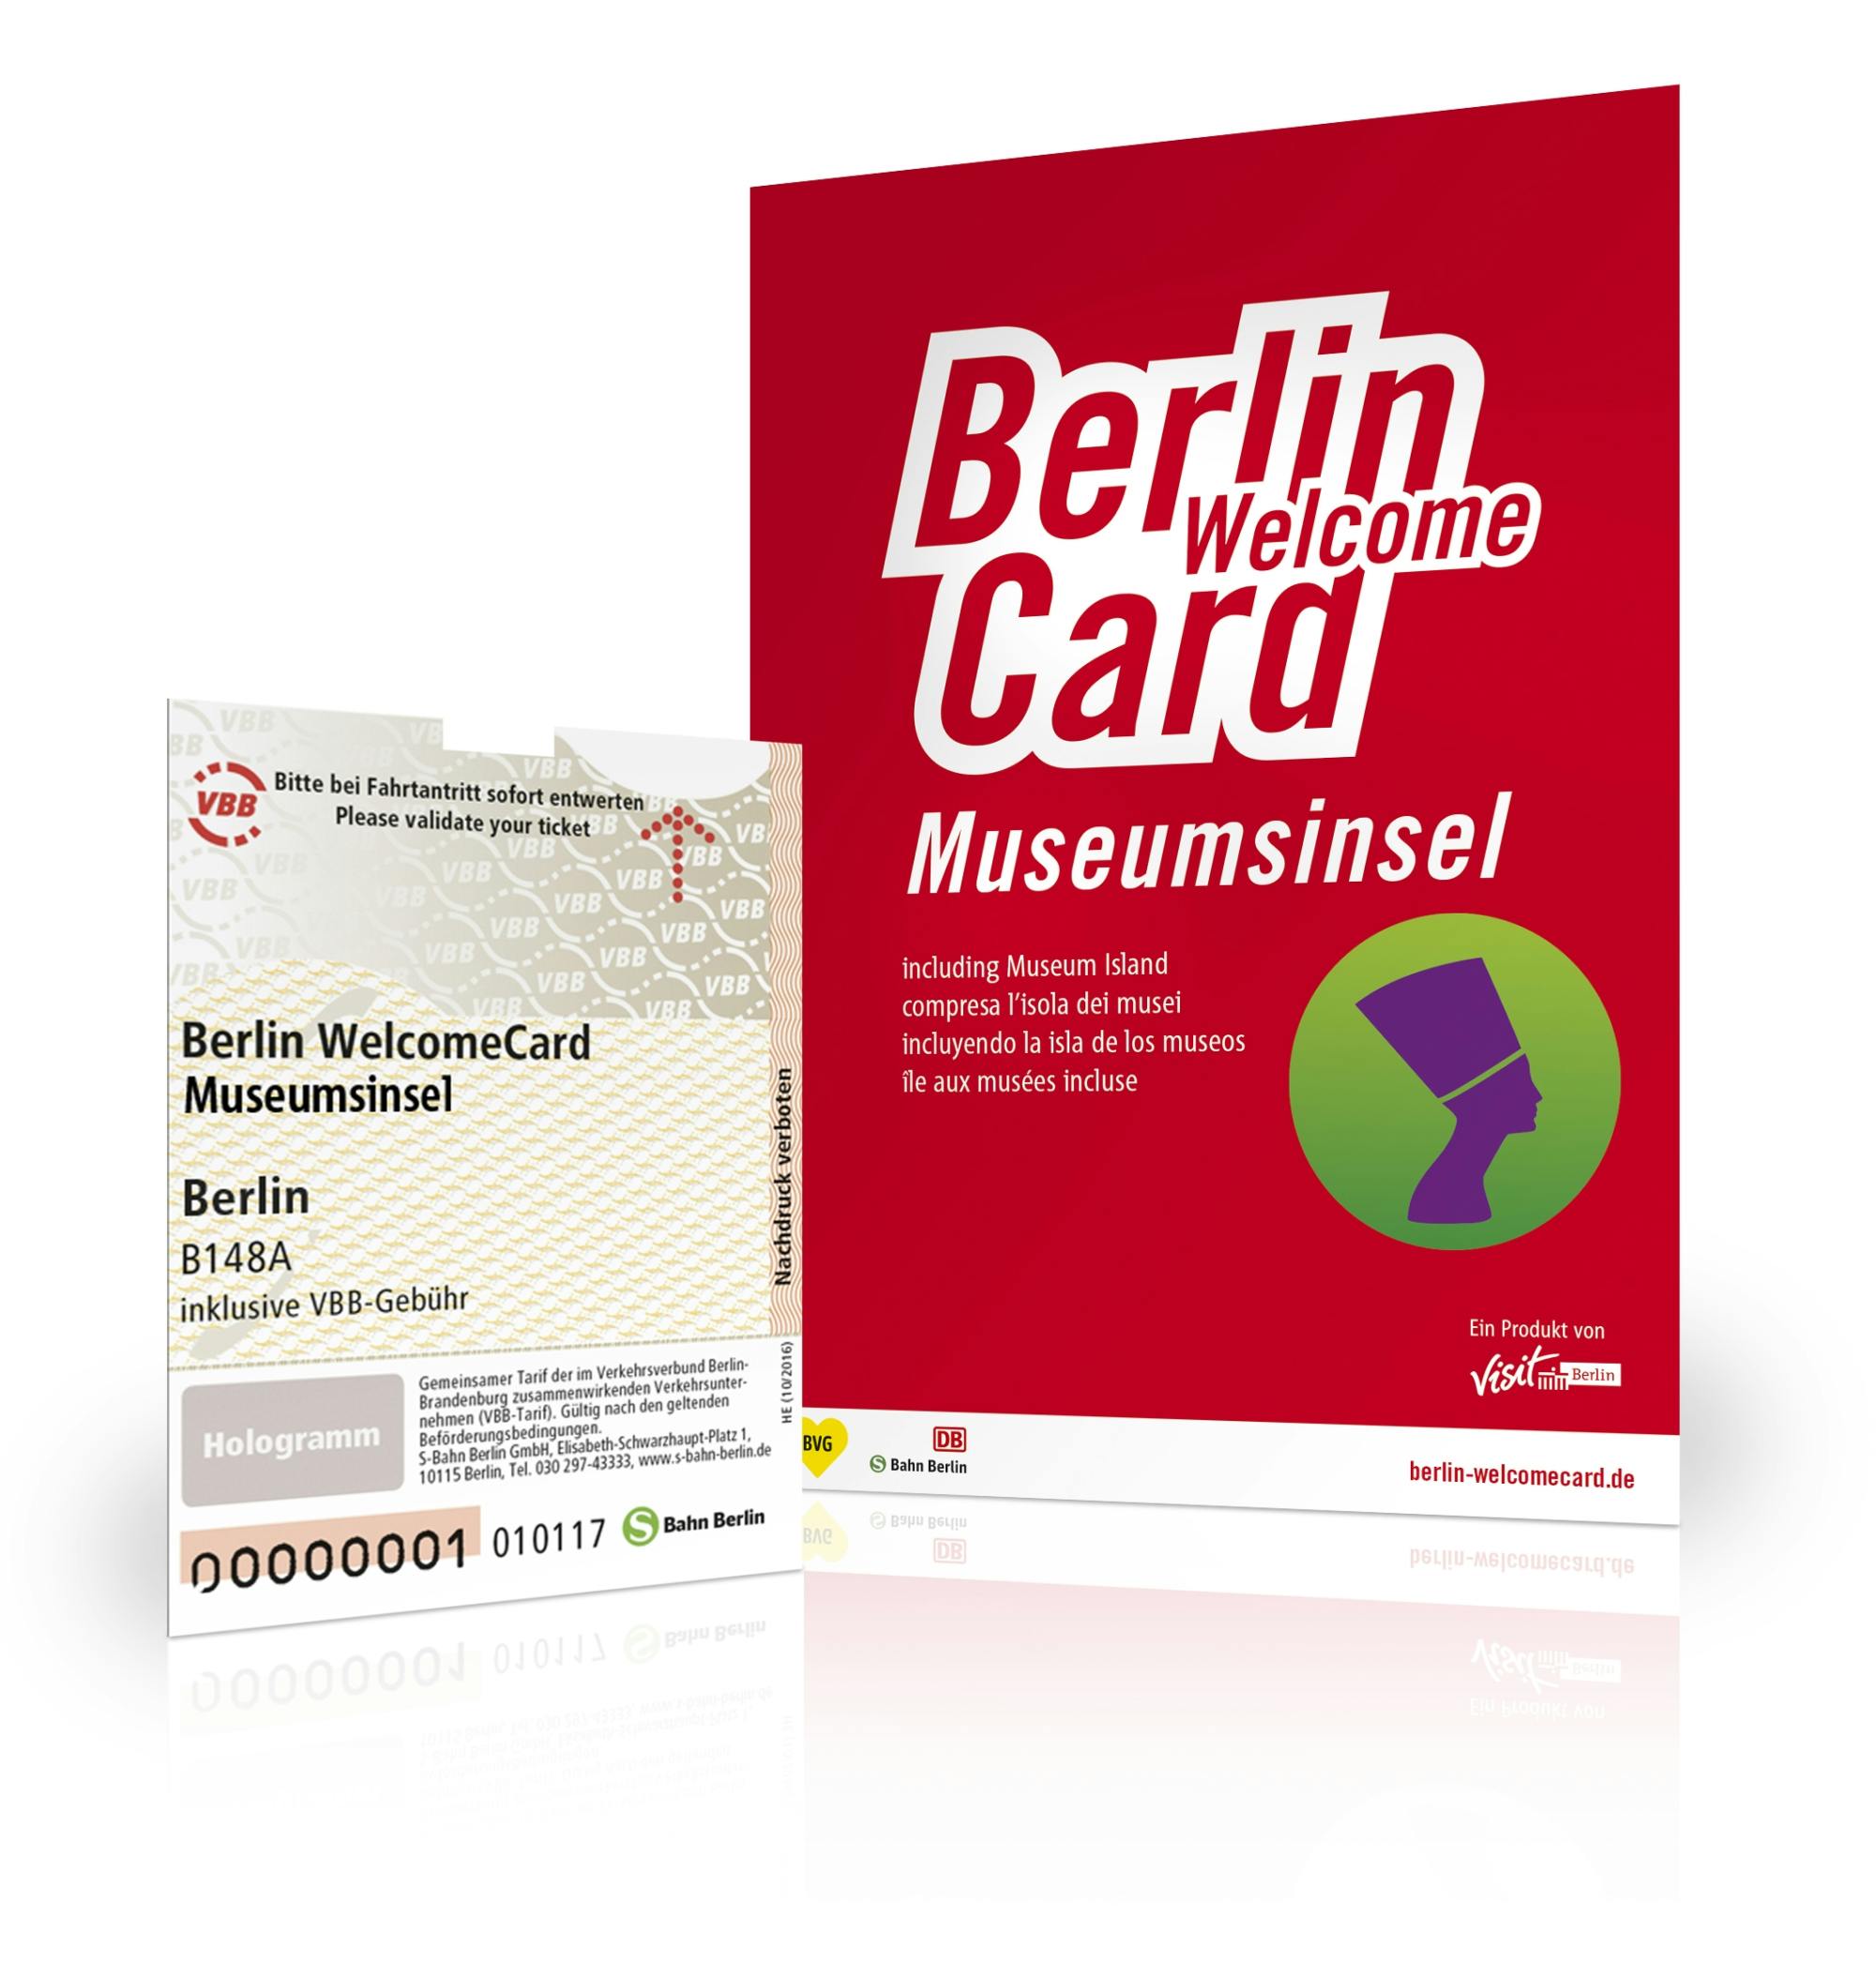 Berlin WelcomeCard com entrada para a Ilha dos Museus